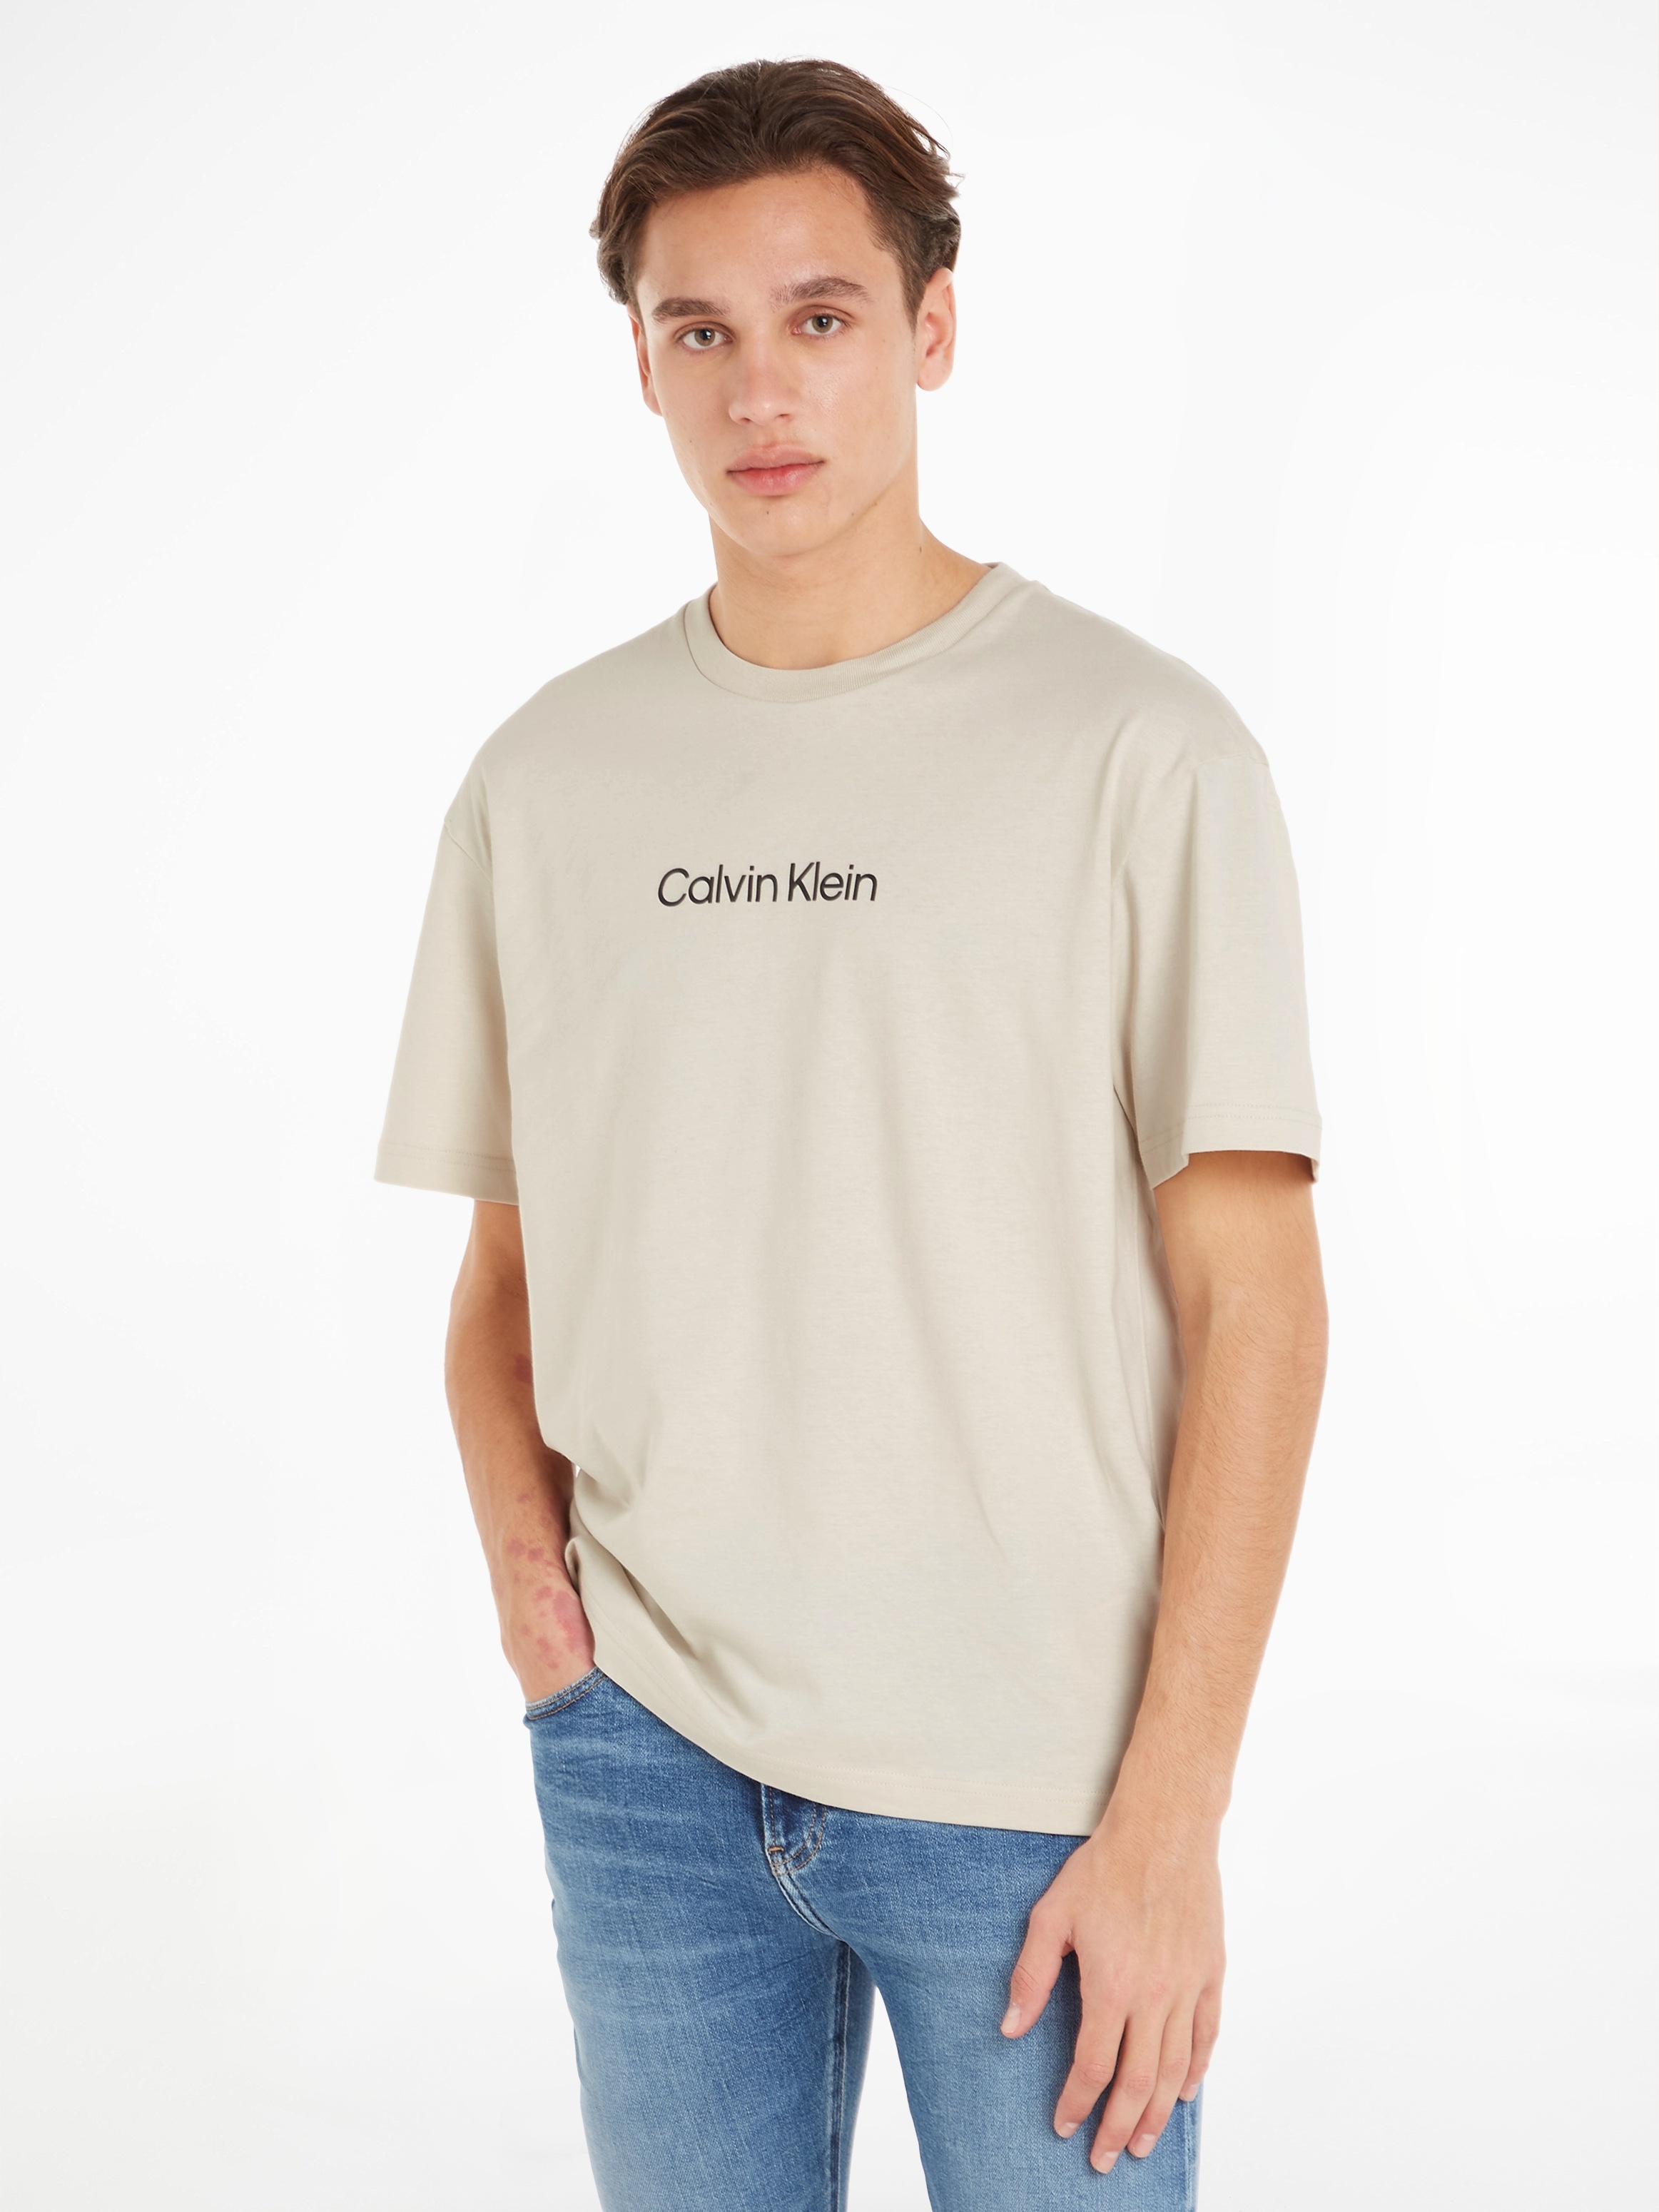 online »HERO COMFORT bestellen T-Shirt Markenlabel Klein mit aufgedrucktem T-SHIRT«, LOGO Calvin